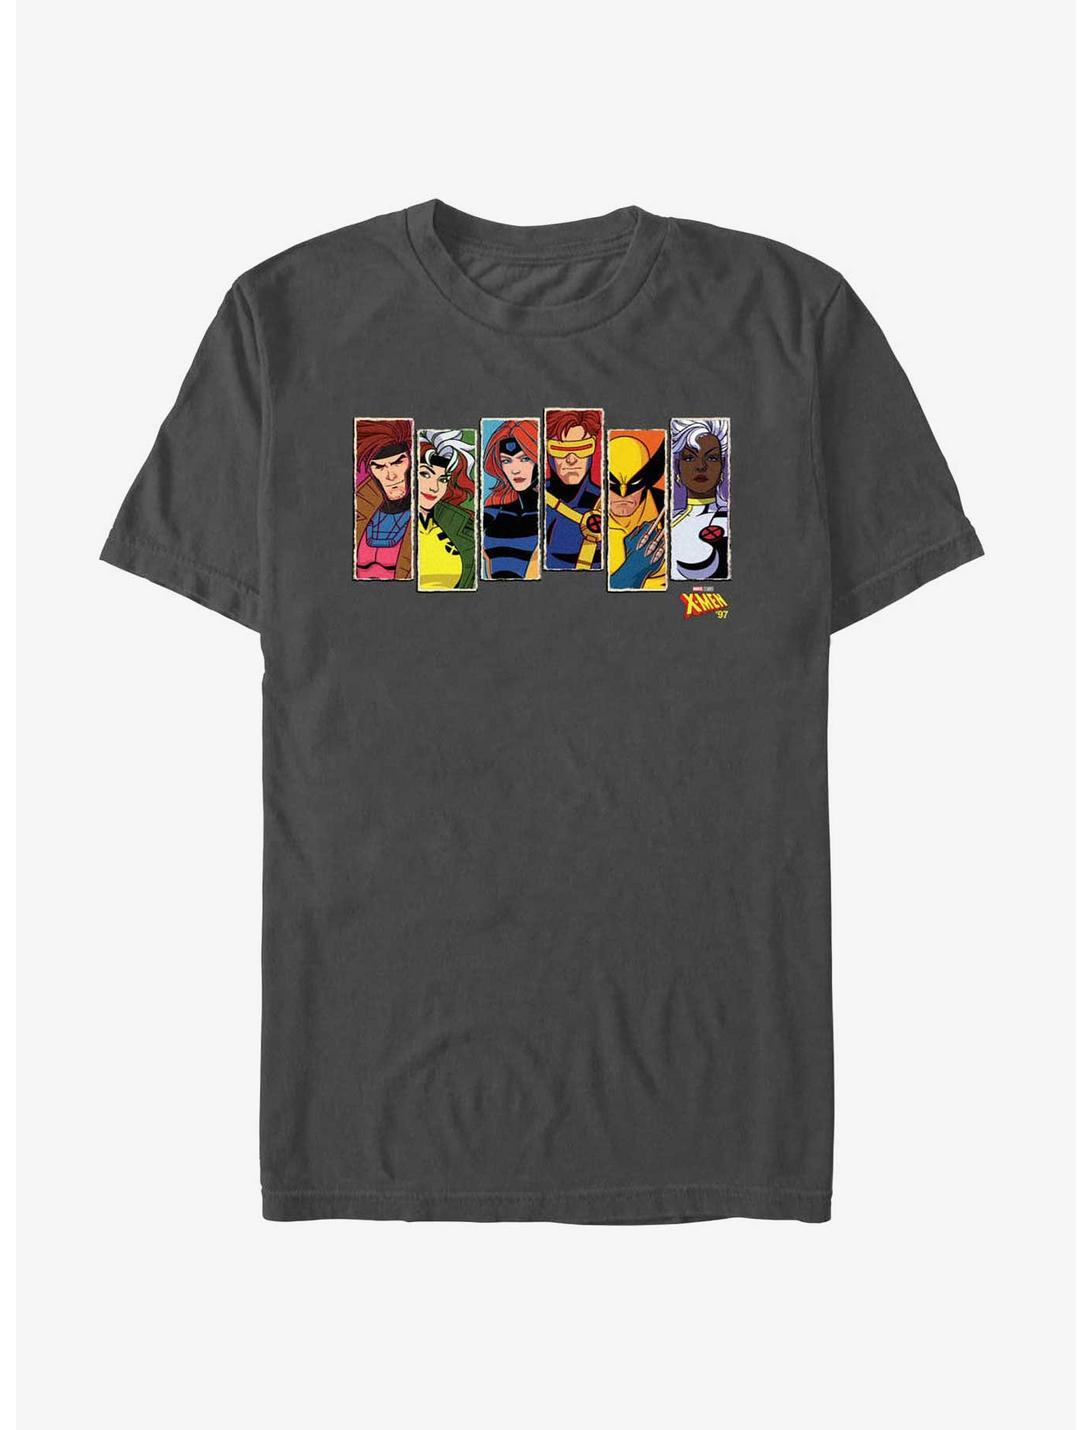 Marvel X-Men '97 Portraits T-Shirt, CHARCOAL, hi-res